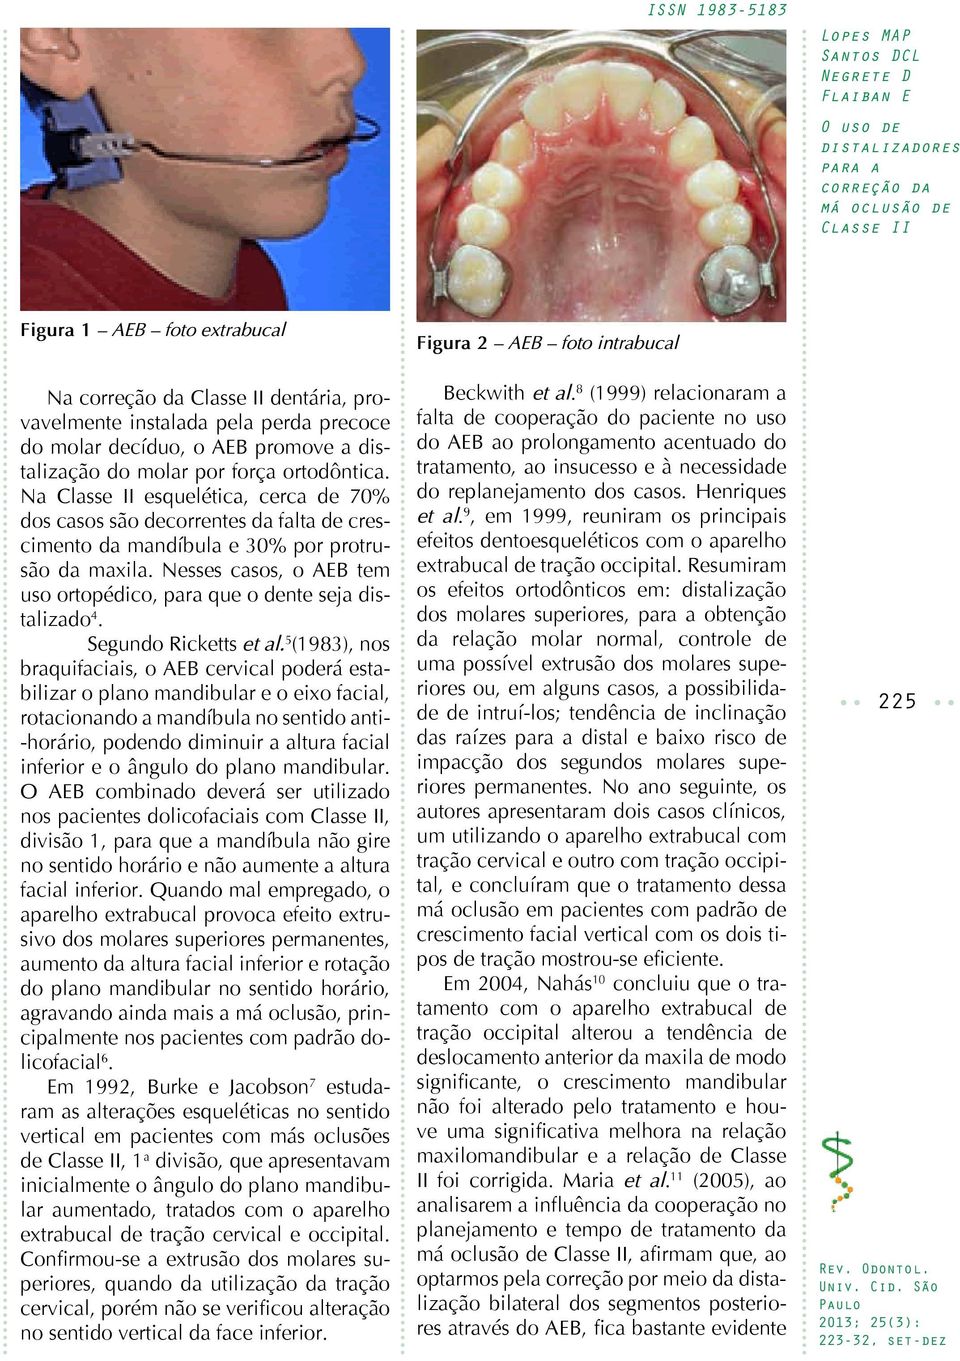 Nesses casos, o AEB tem uso ortopédico, para que o dente seja distalizado 4. Segundo Ricketts et al.